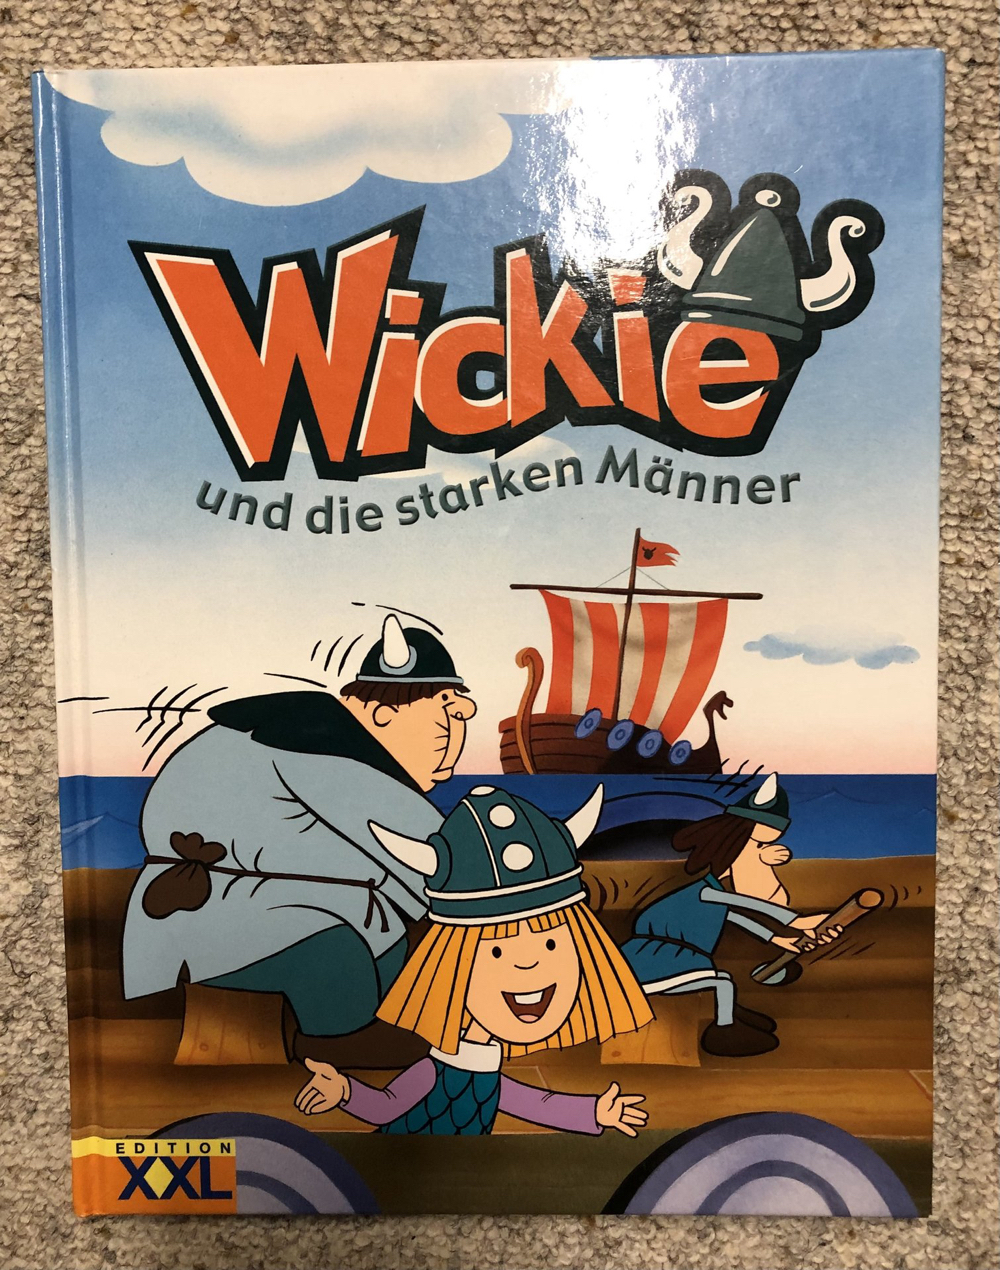 Buch :Wickie und die starken Männer, XXL Edition, gut erhalten 